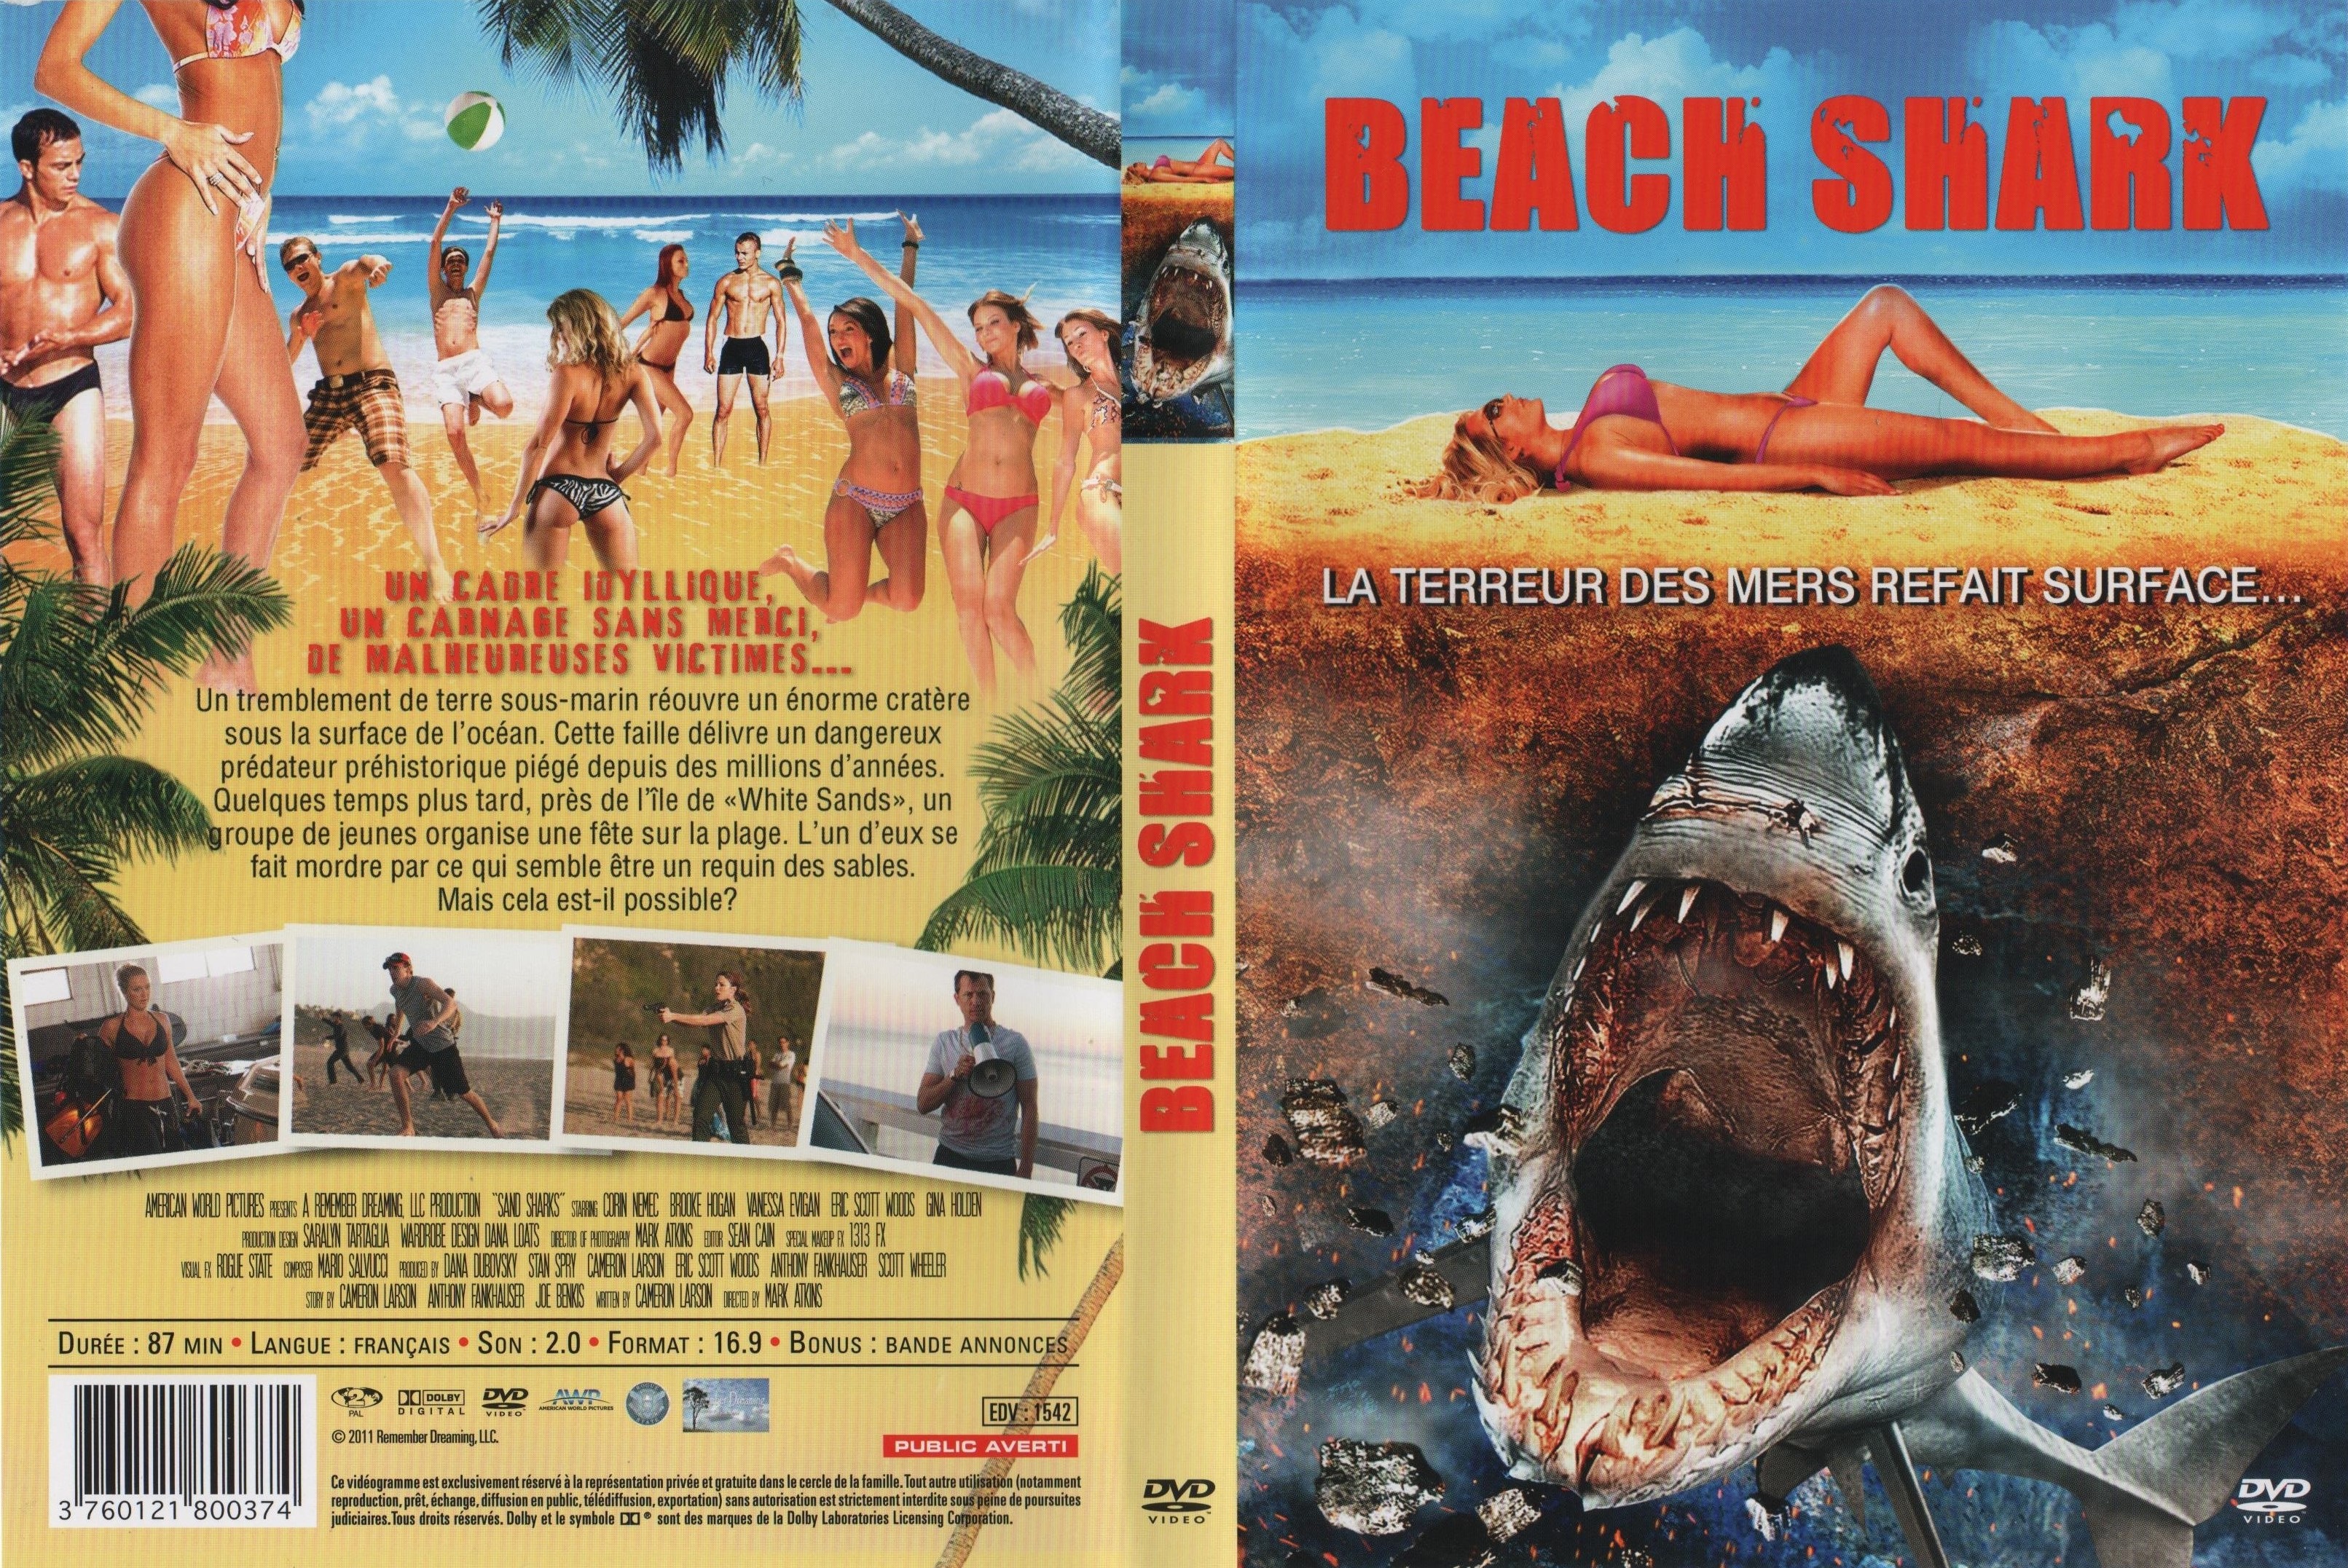 Jaquette DVD Beach shark